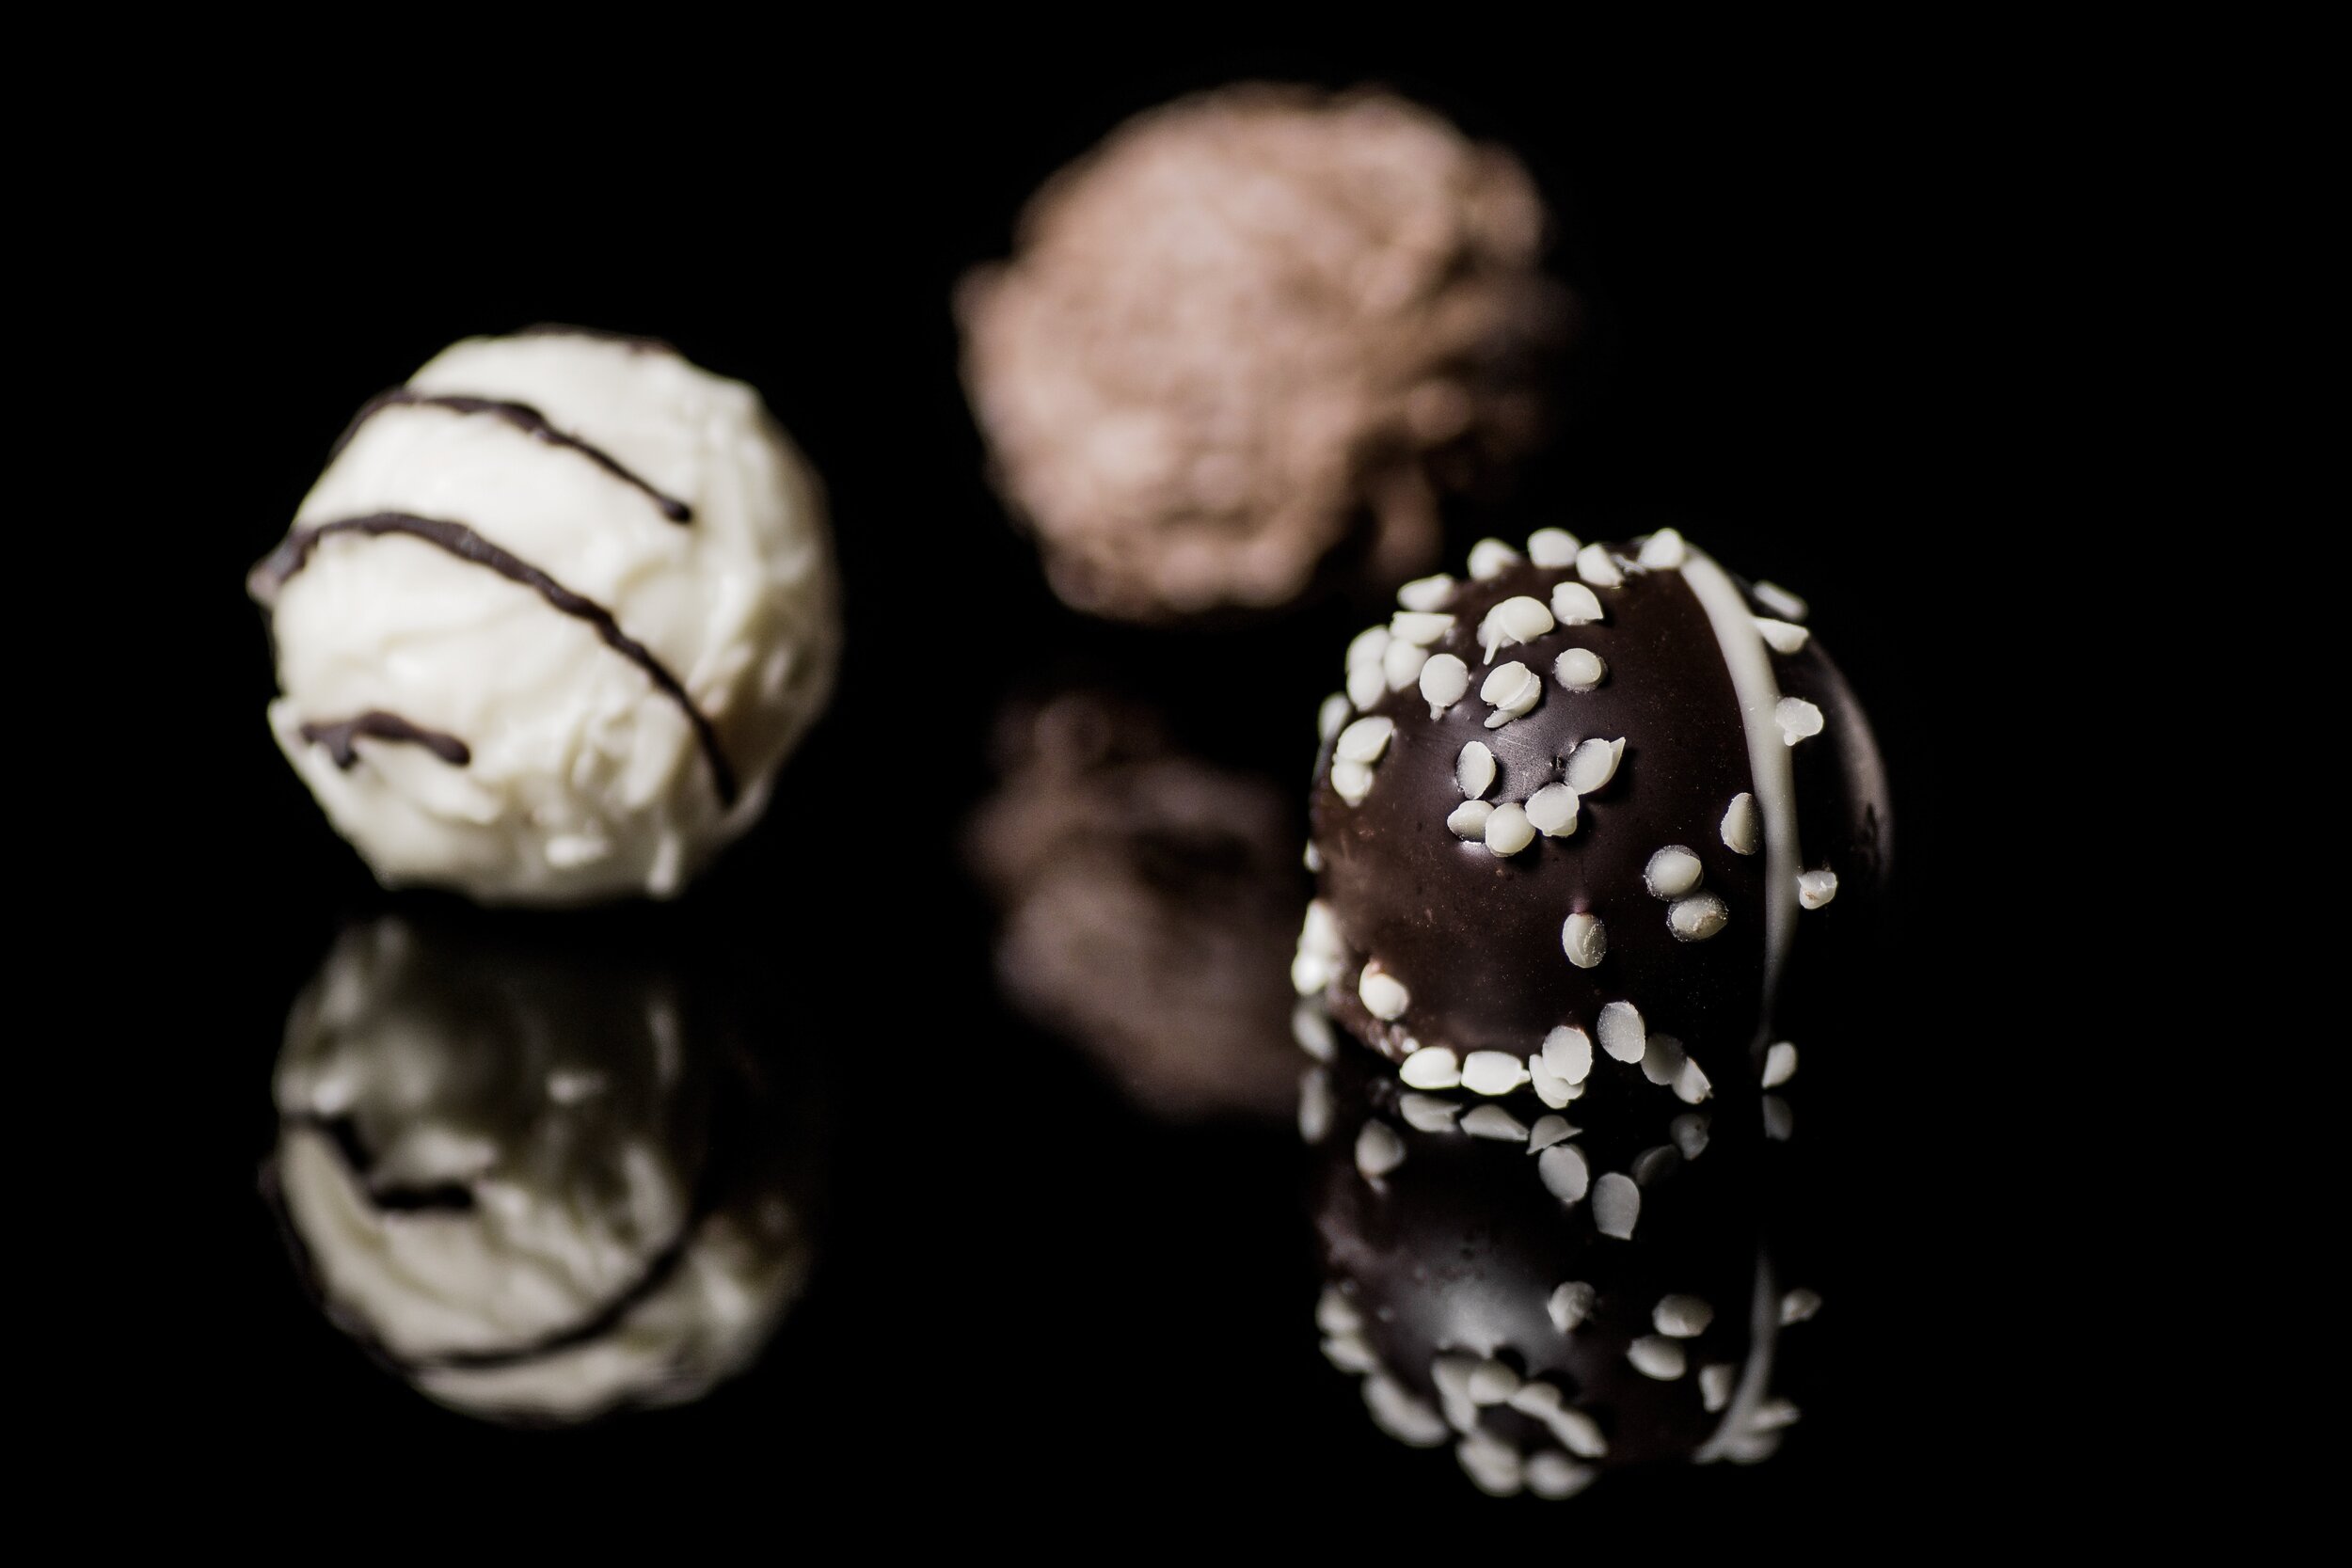 chocolate-and-vanilla-round-pastry-66234.jpg